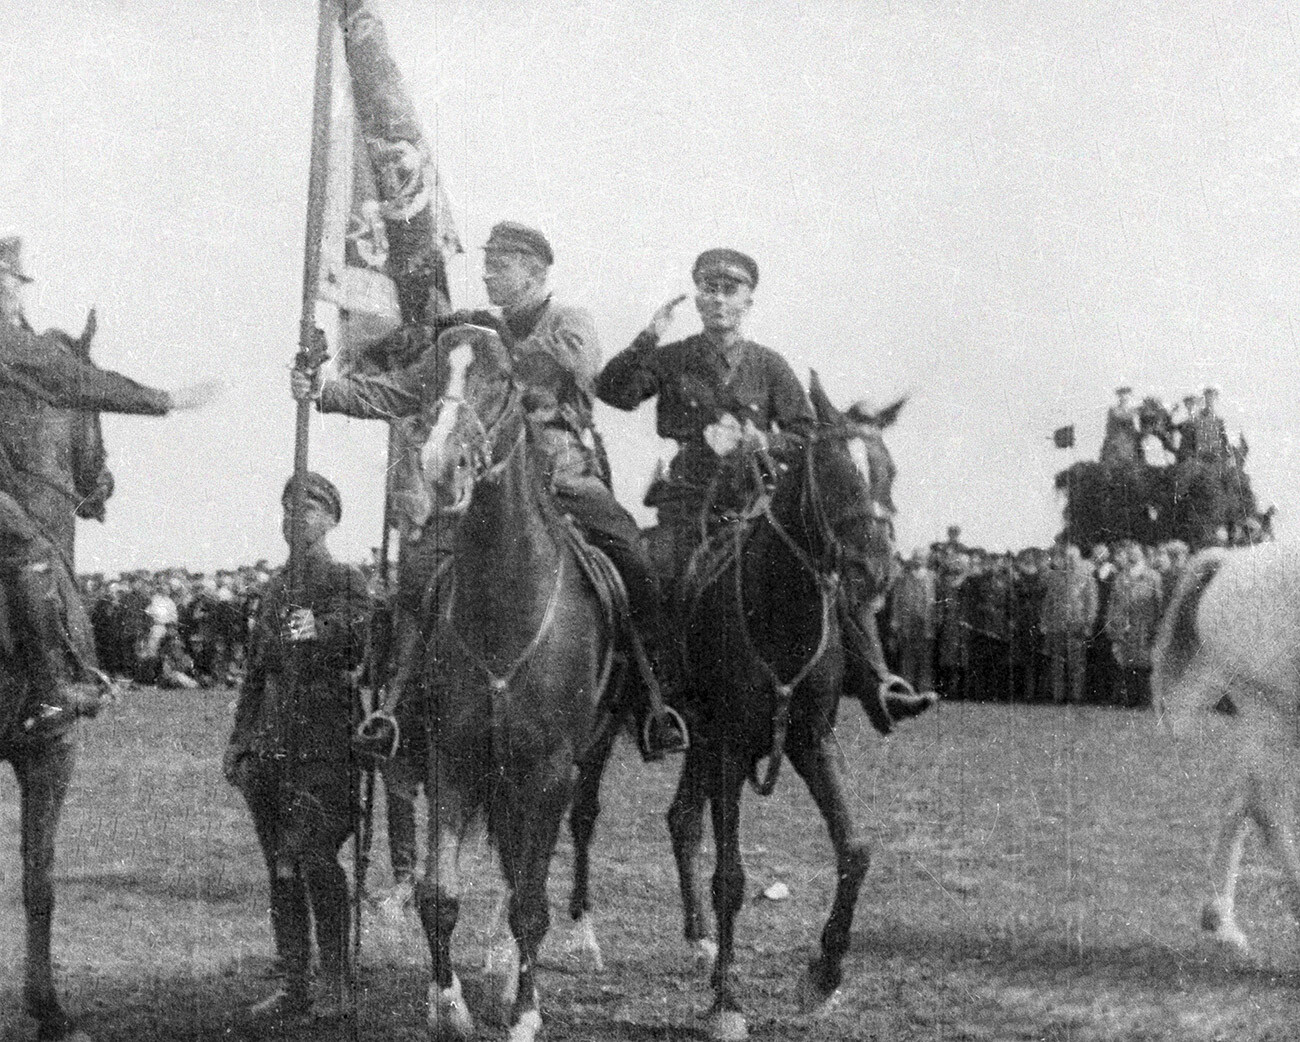 Tukhachevsky passa bandeira à divisão de cavalaria de Leningrado.